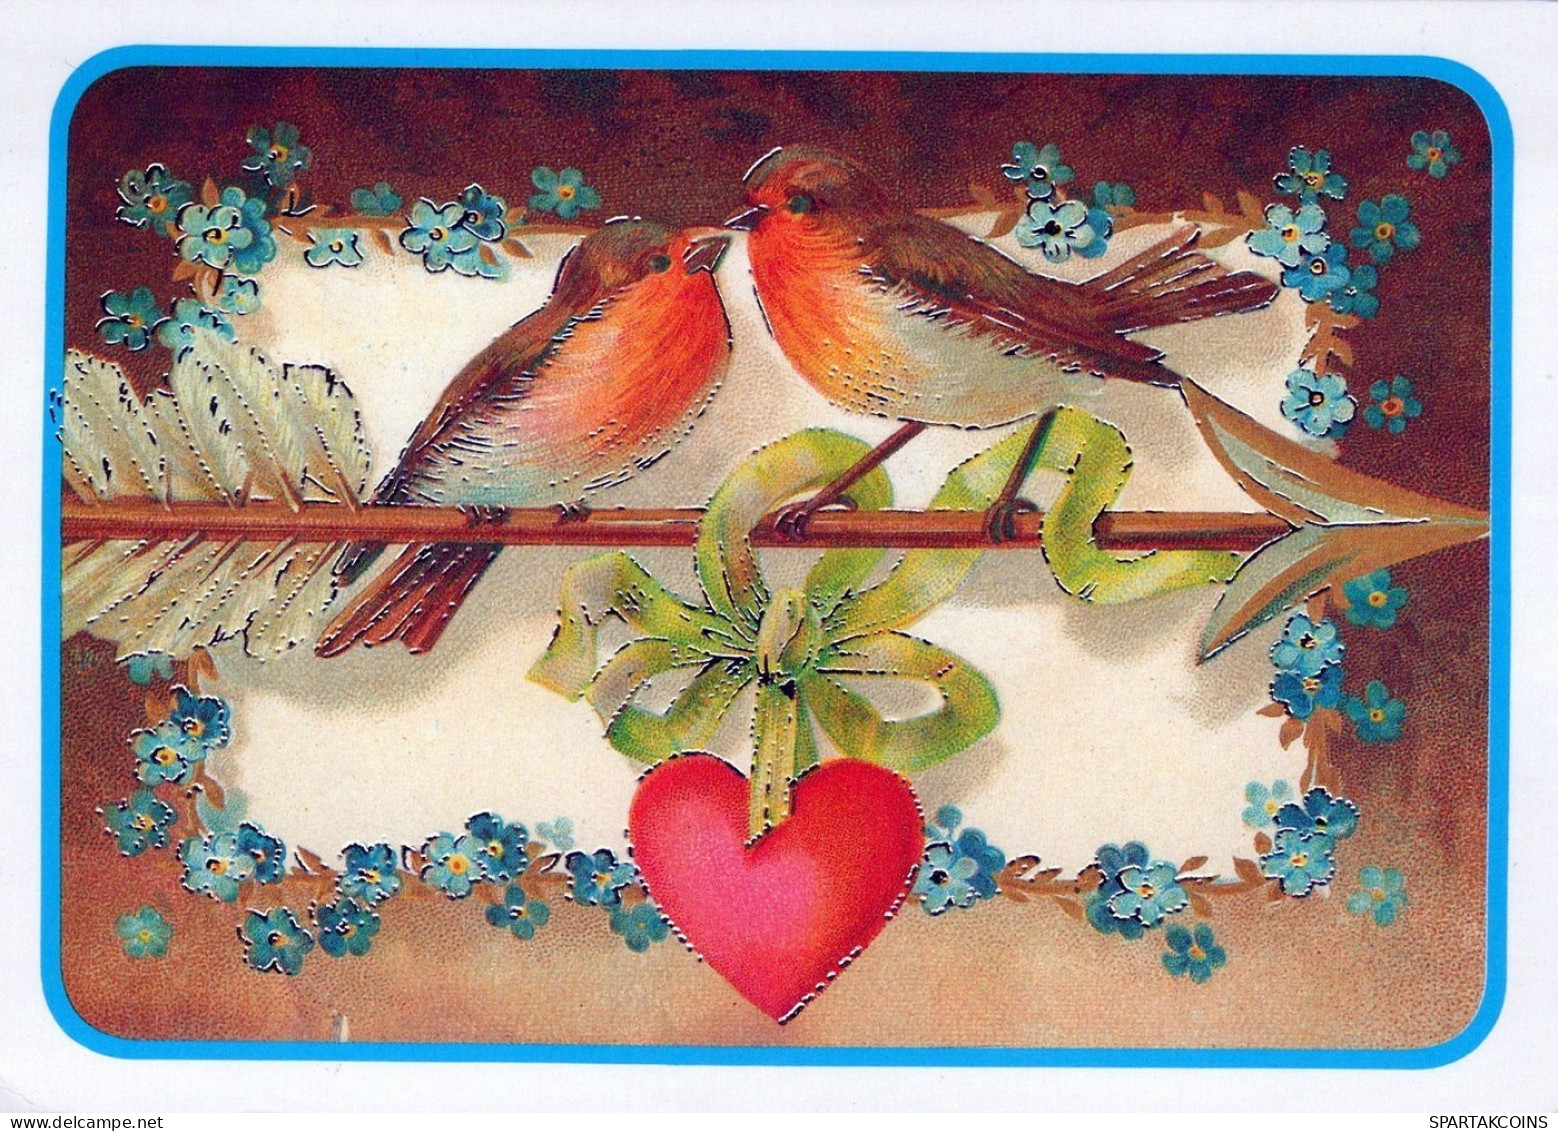 VOGEL Tier Vintage Ansichtskarte Postkarte CPSM #PAN175.DE - Vögel